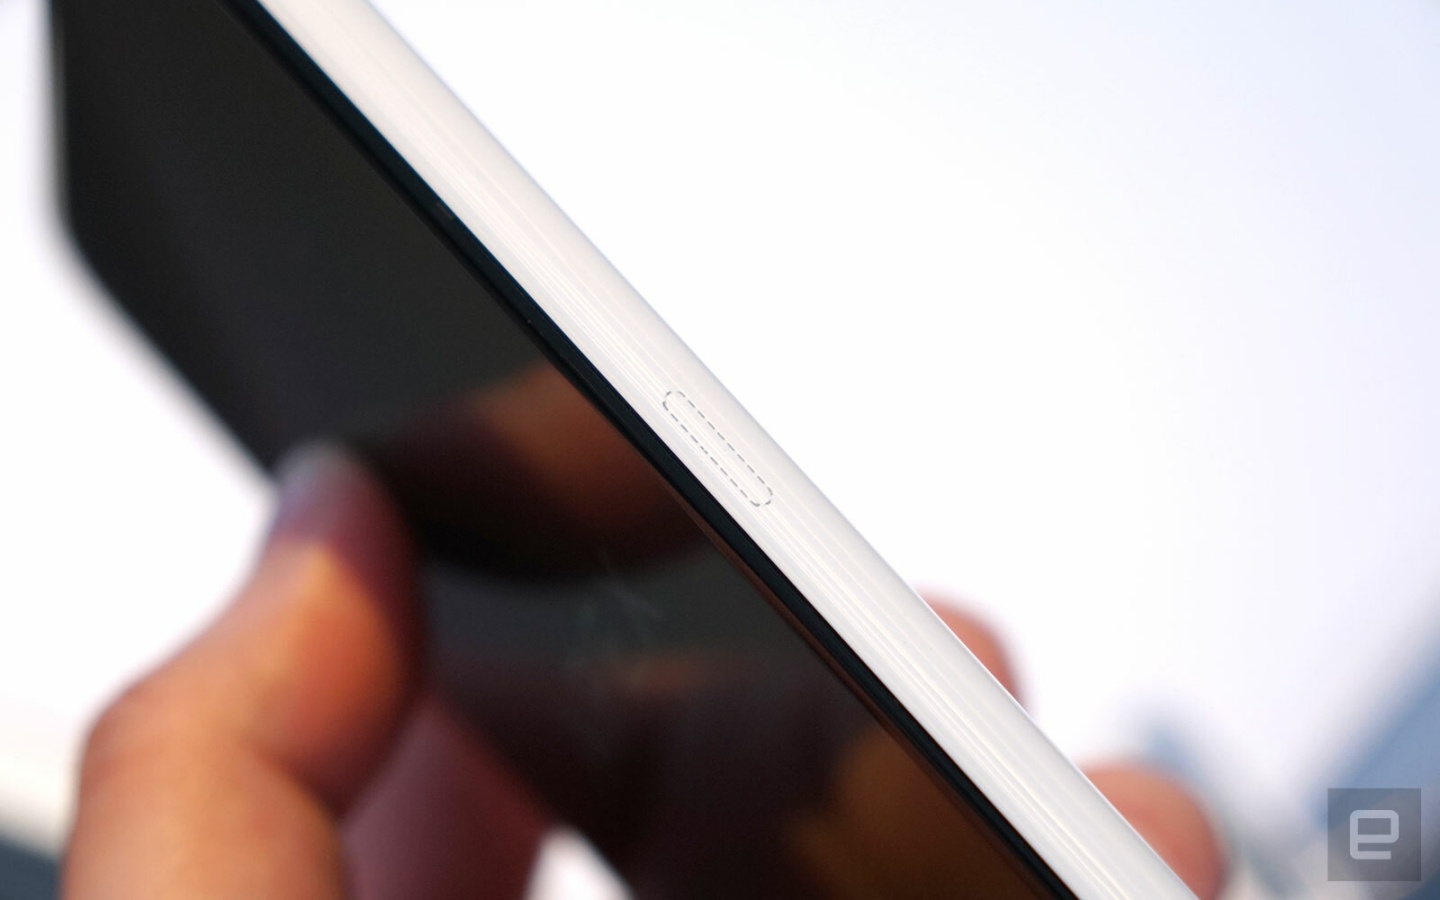 『 三星Galaxy Note 10 』相關資訊曝光 將採用完全無按鍵機身和螢幕下的隱藏鏡頭